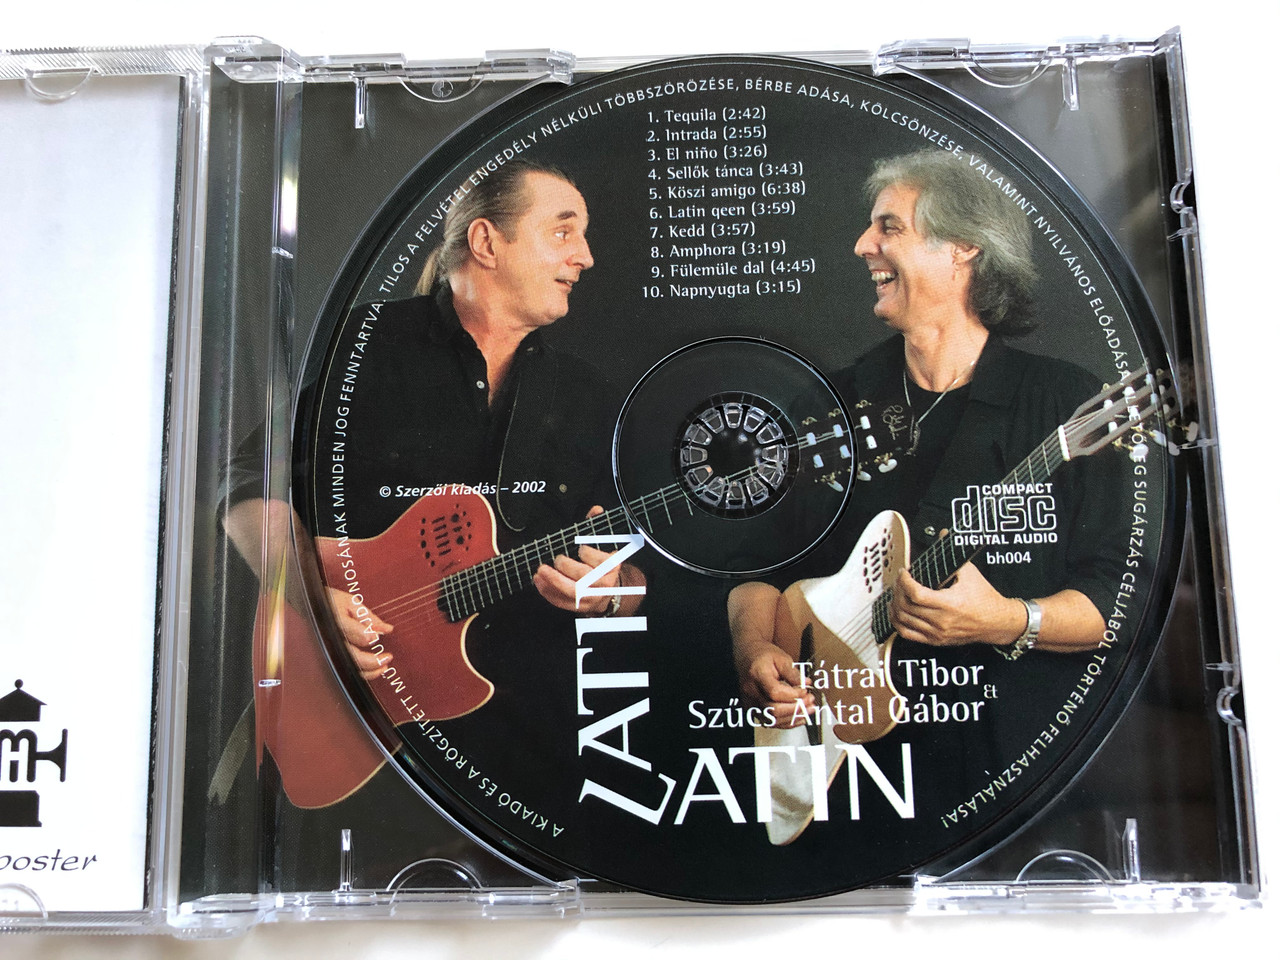 Latin-Latin - Tátrai Tibor & Szűcs Antal Gábor ‎/ Hugi-Boogie Produkció  ‎Audio CD 2002 / bh004 - bibleinmylanguage